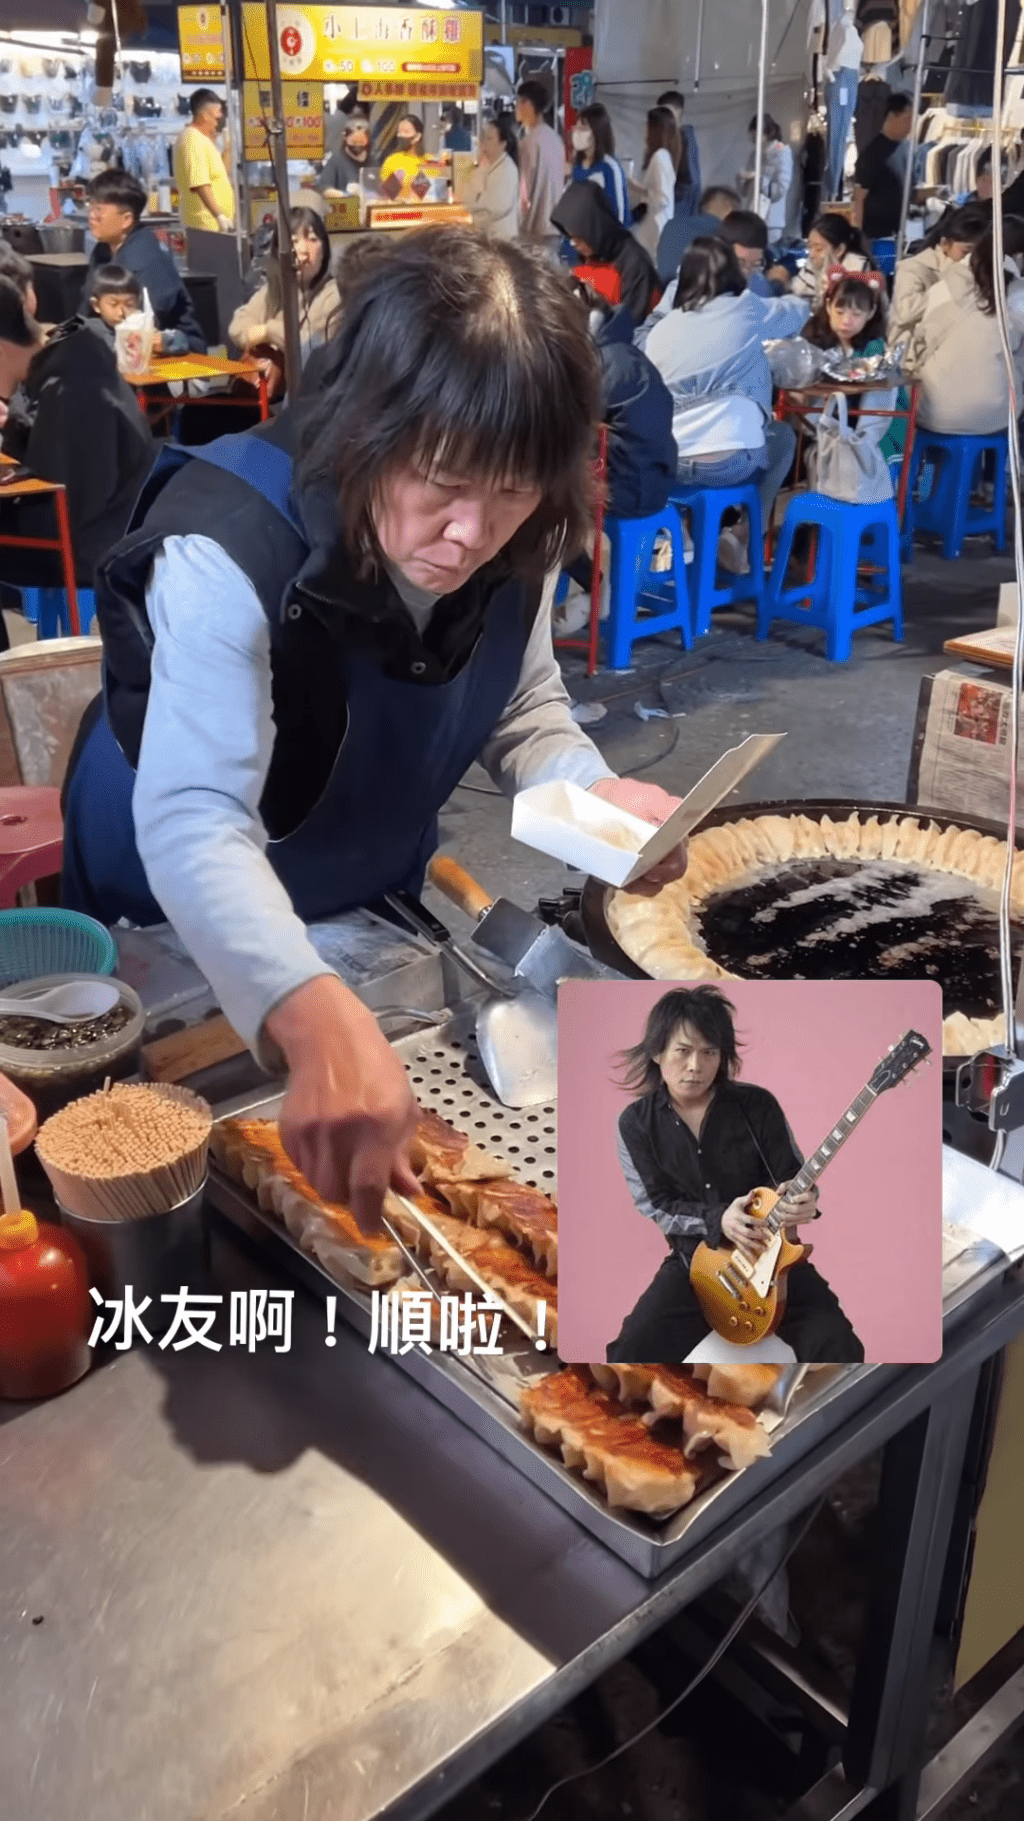 原來有網民在台灣夜市發現一名賣煎餃的阿姨竟撞樣伍佰！